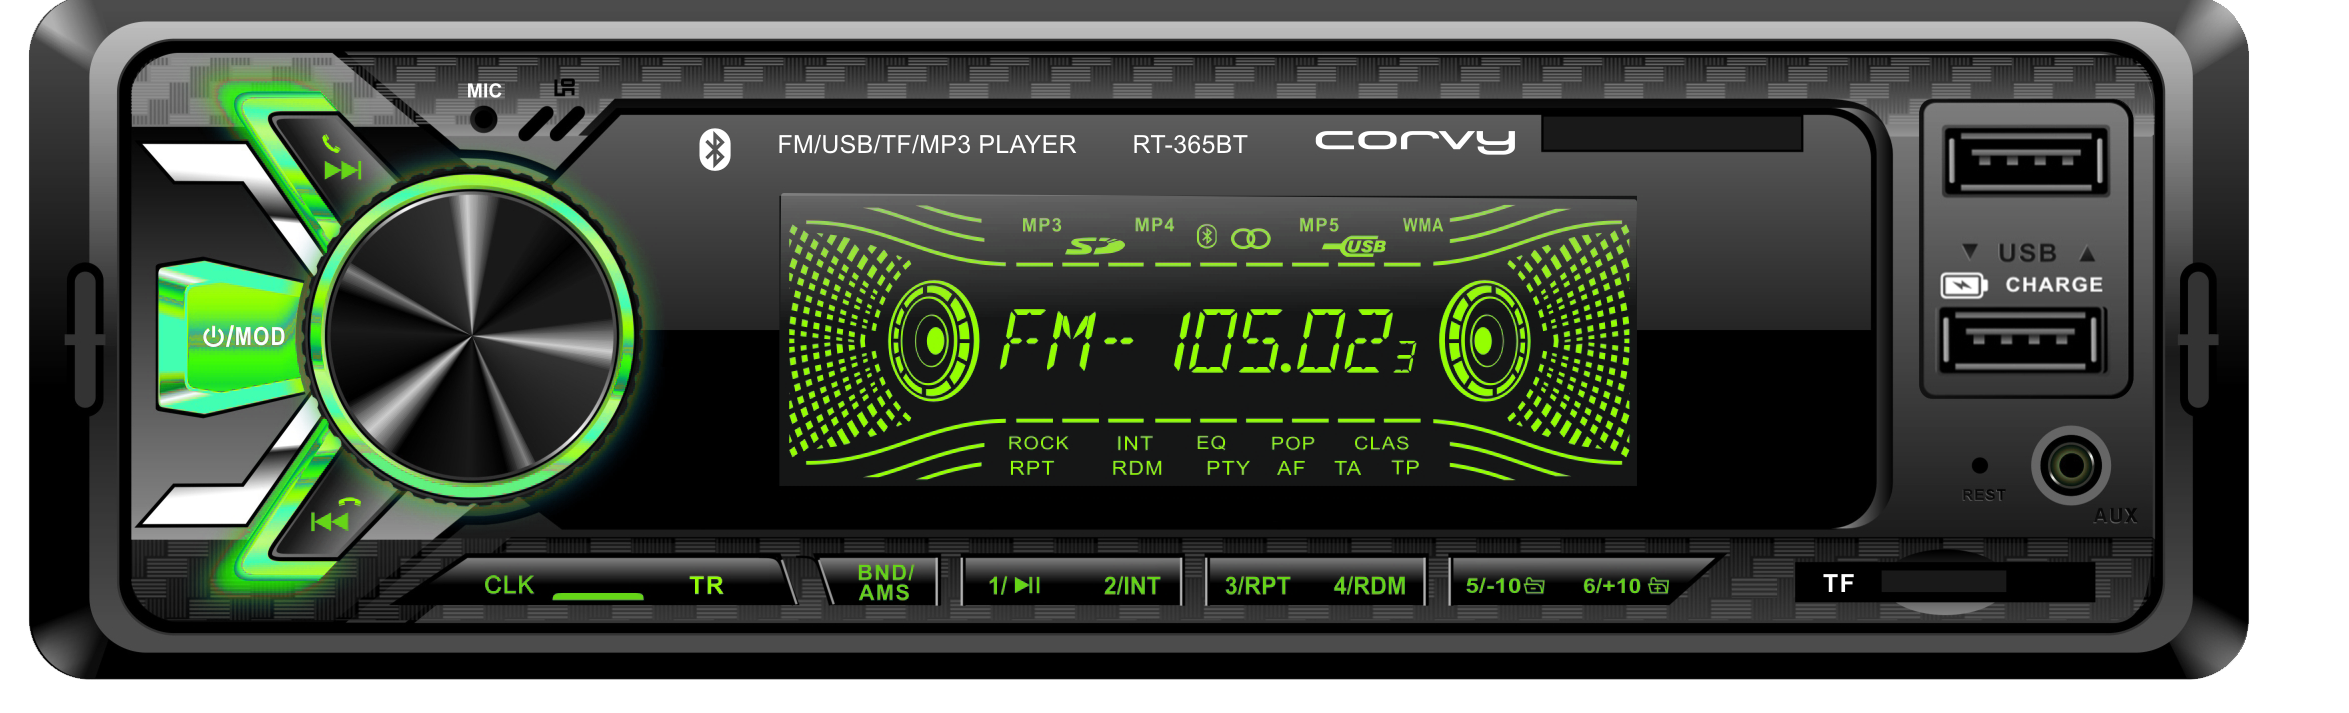 Auto-radio MP3,FM de sintonía  pantalla en 7 colores   Corvy RT-365 BT